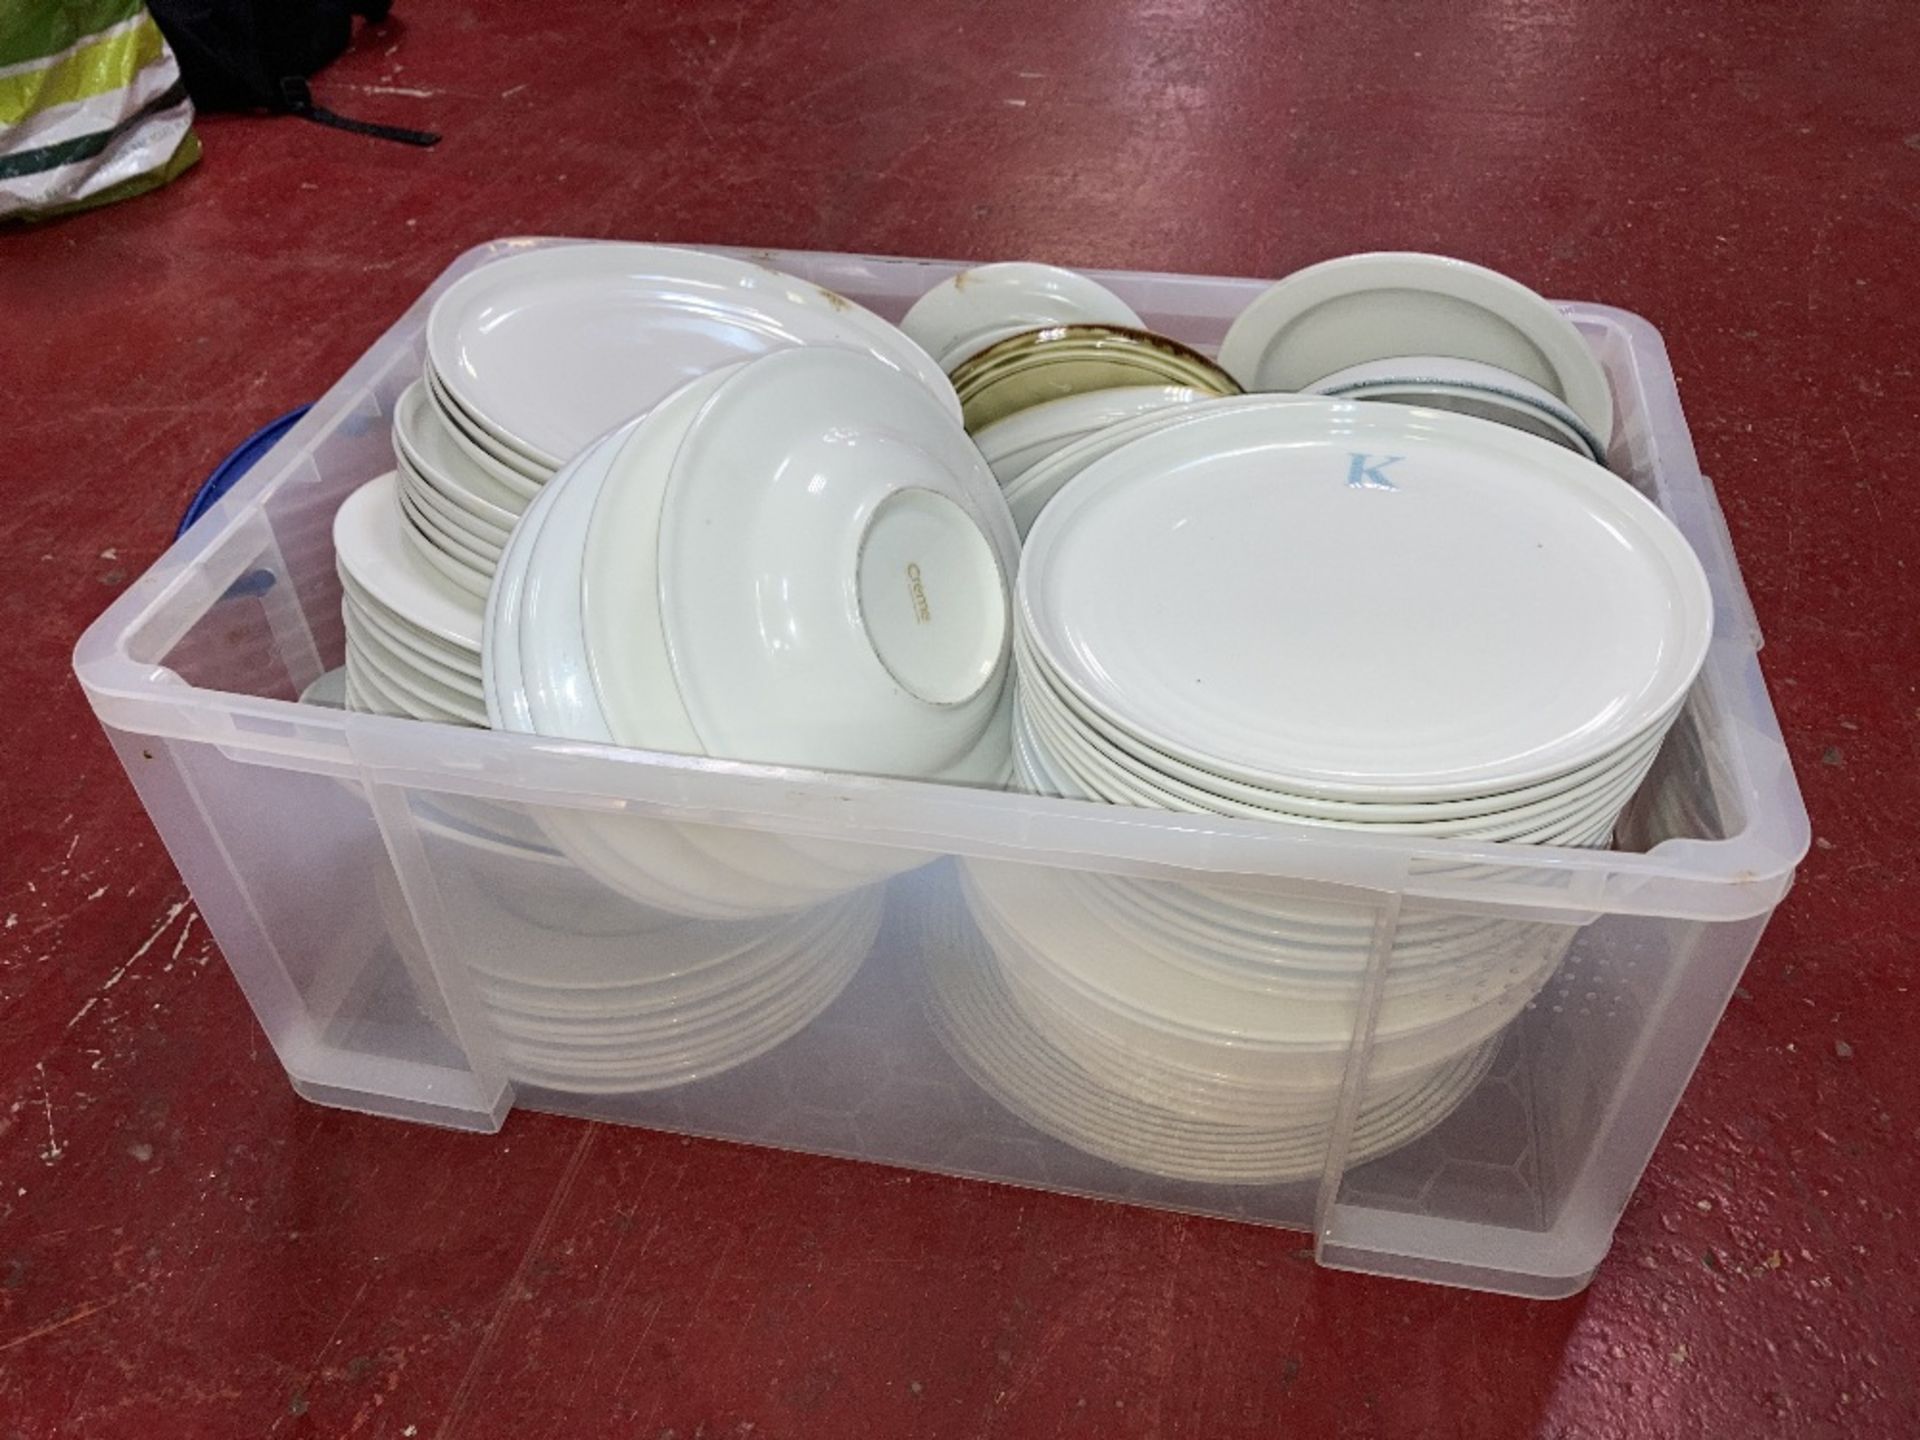 Quantity of Ceramic & Plastic Dishware c/w Plastic Storage Box - Image 2 of 2